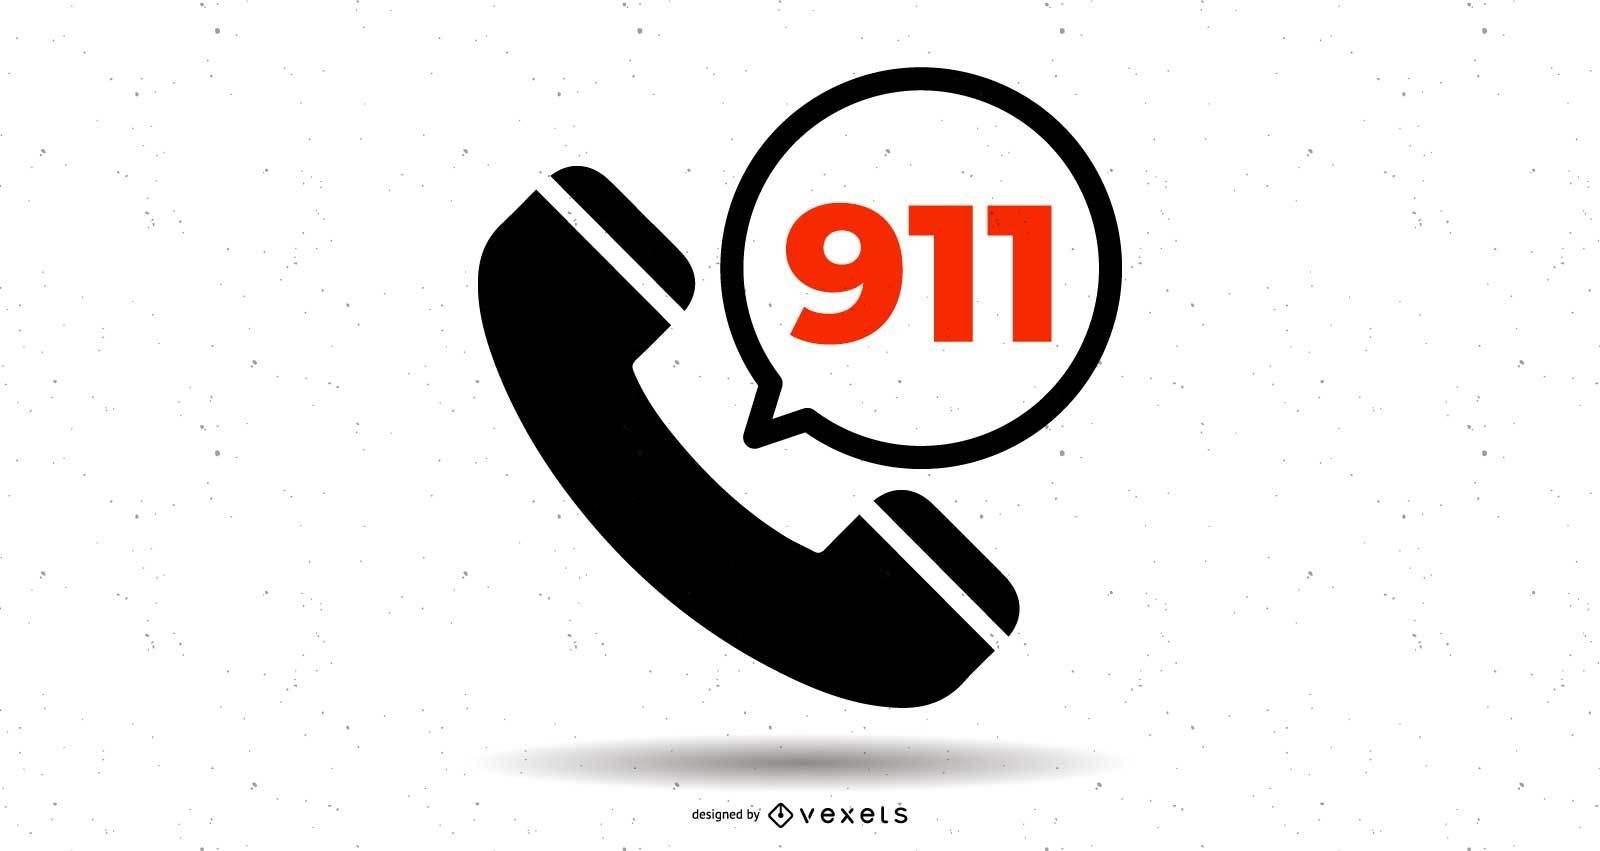 S?mbolo da linha direta do telefone 911